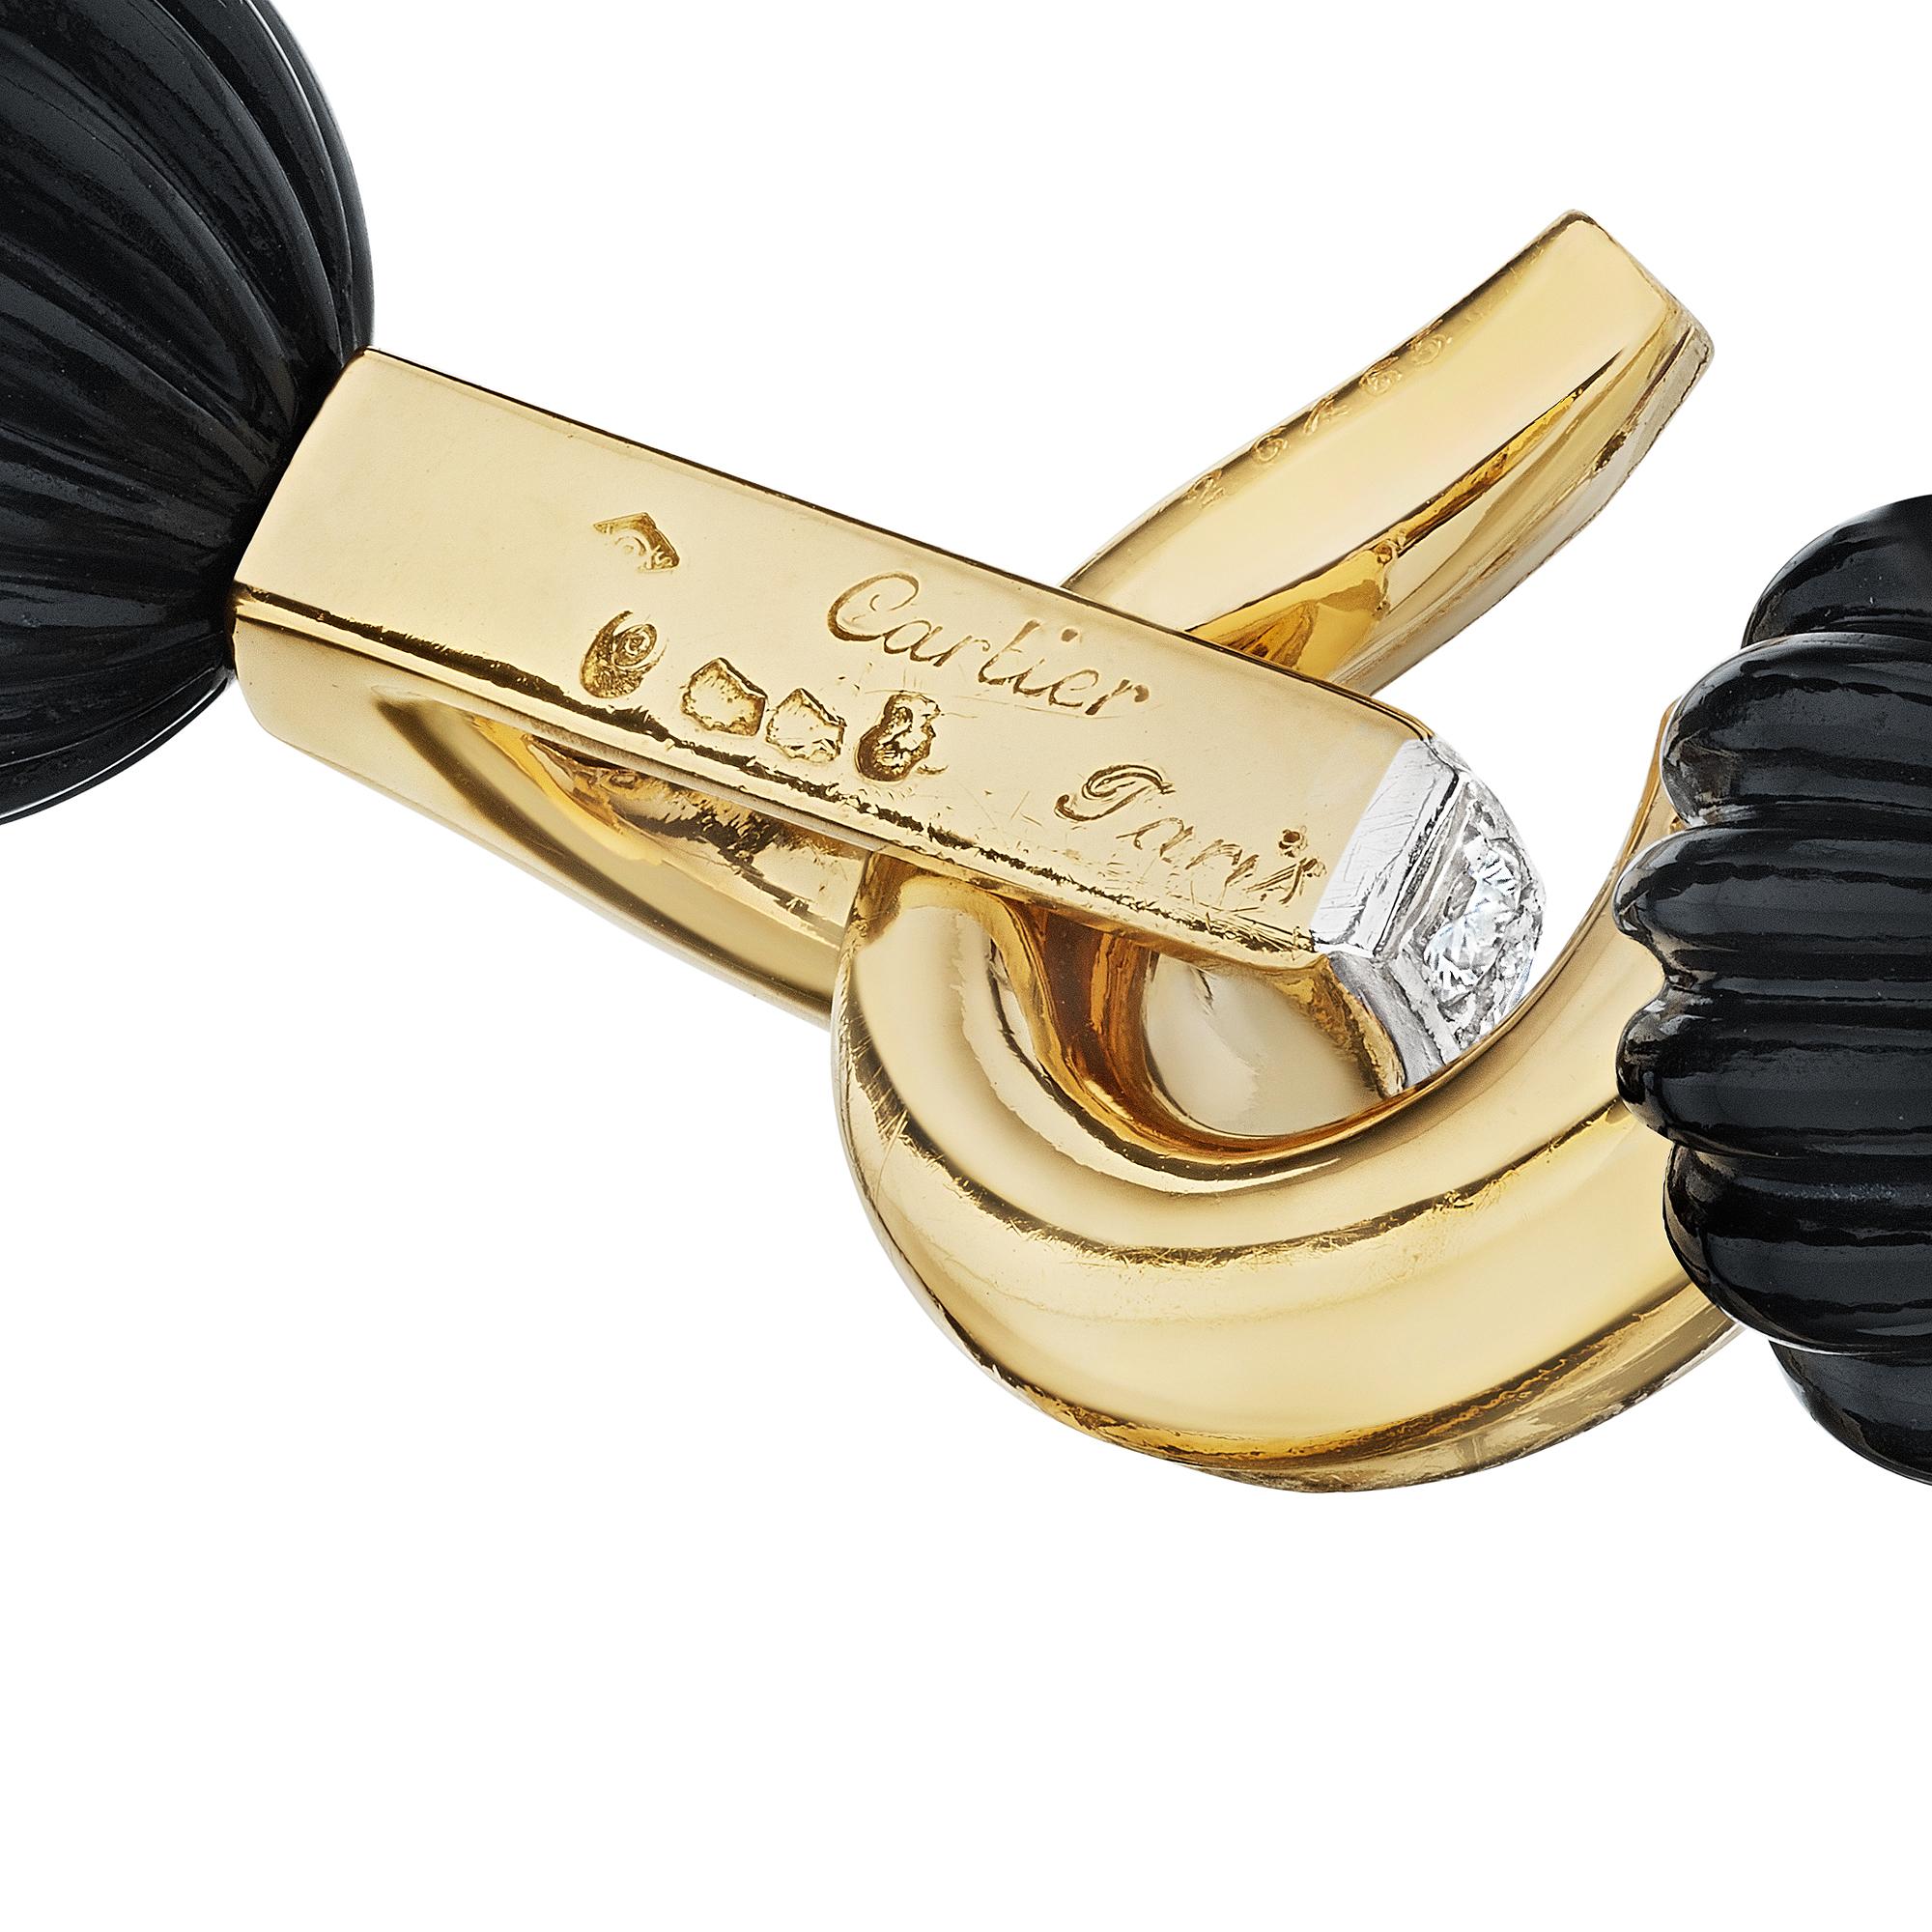 Modernist Cartier Paris Black Onyx Diamond Gold Vintage Bead Bracelet For Sale